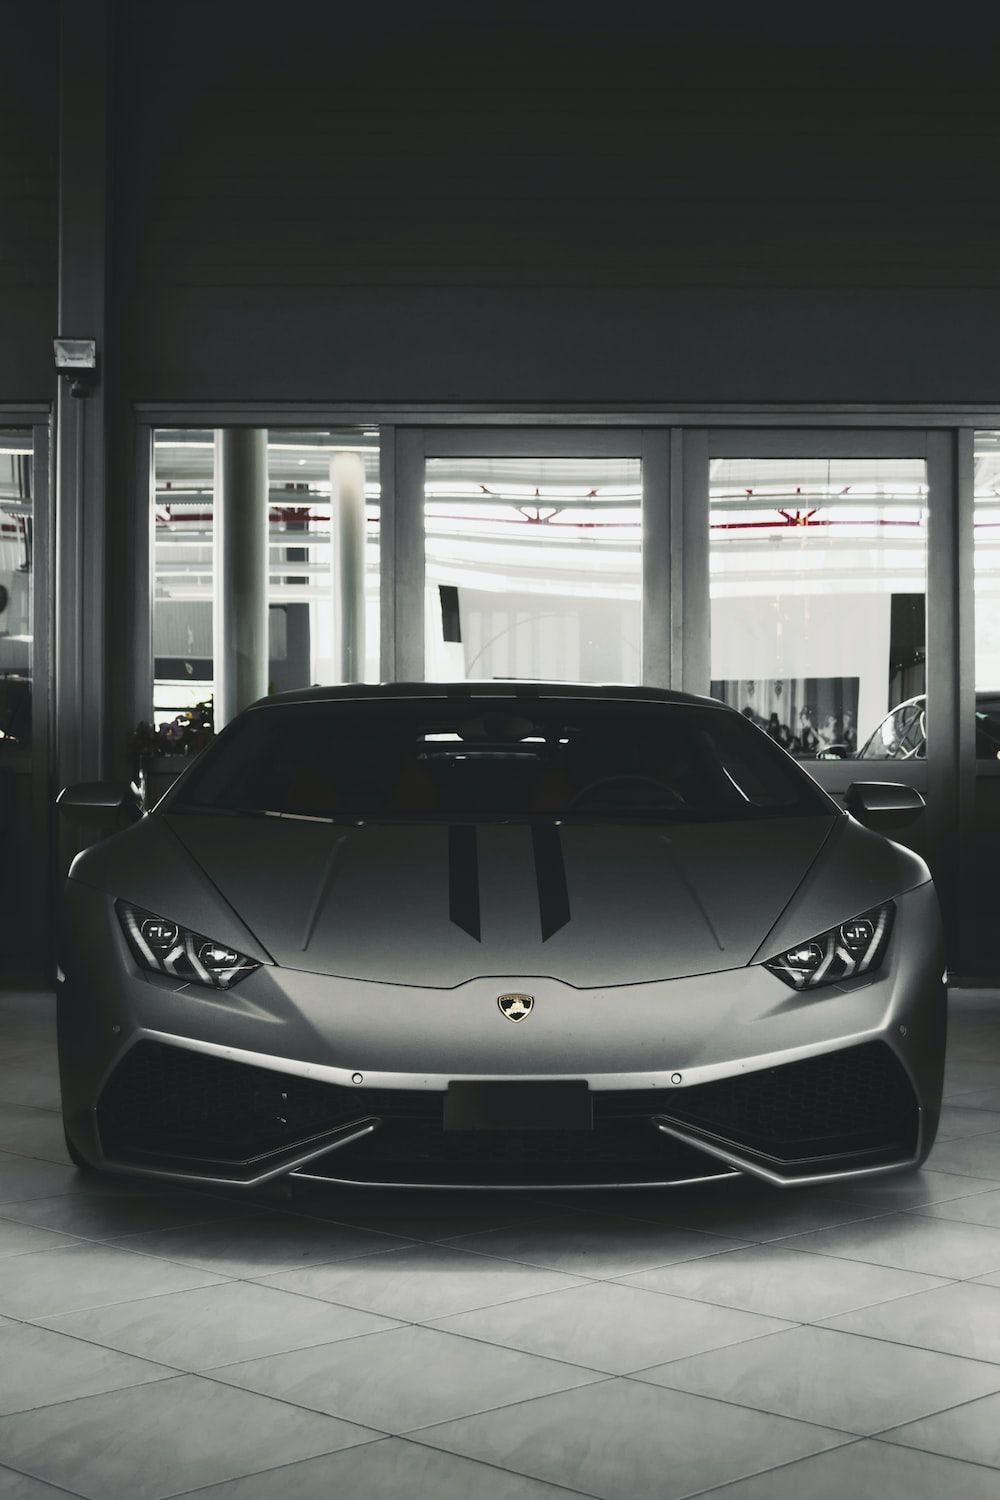 Lamborghini Hintergrundbild 1000x1500. Lamborghini Aventador Svj Picture. Download Free Image